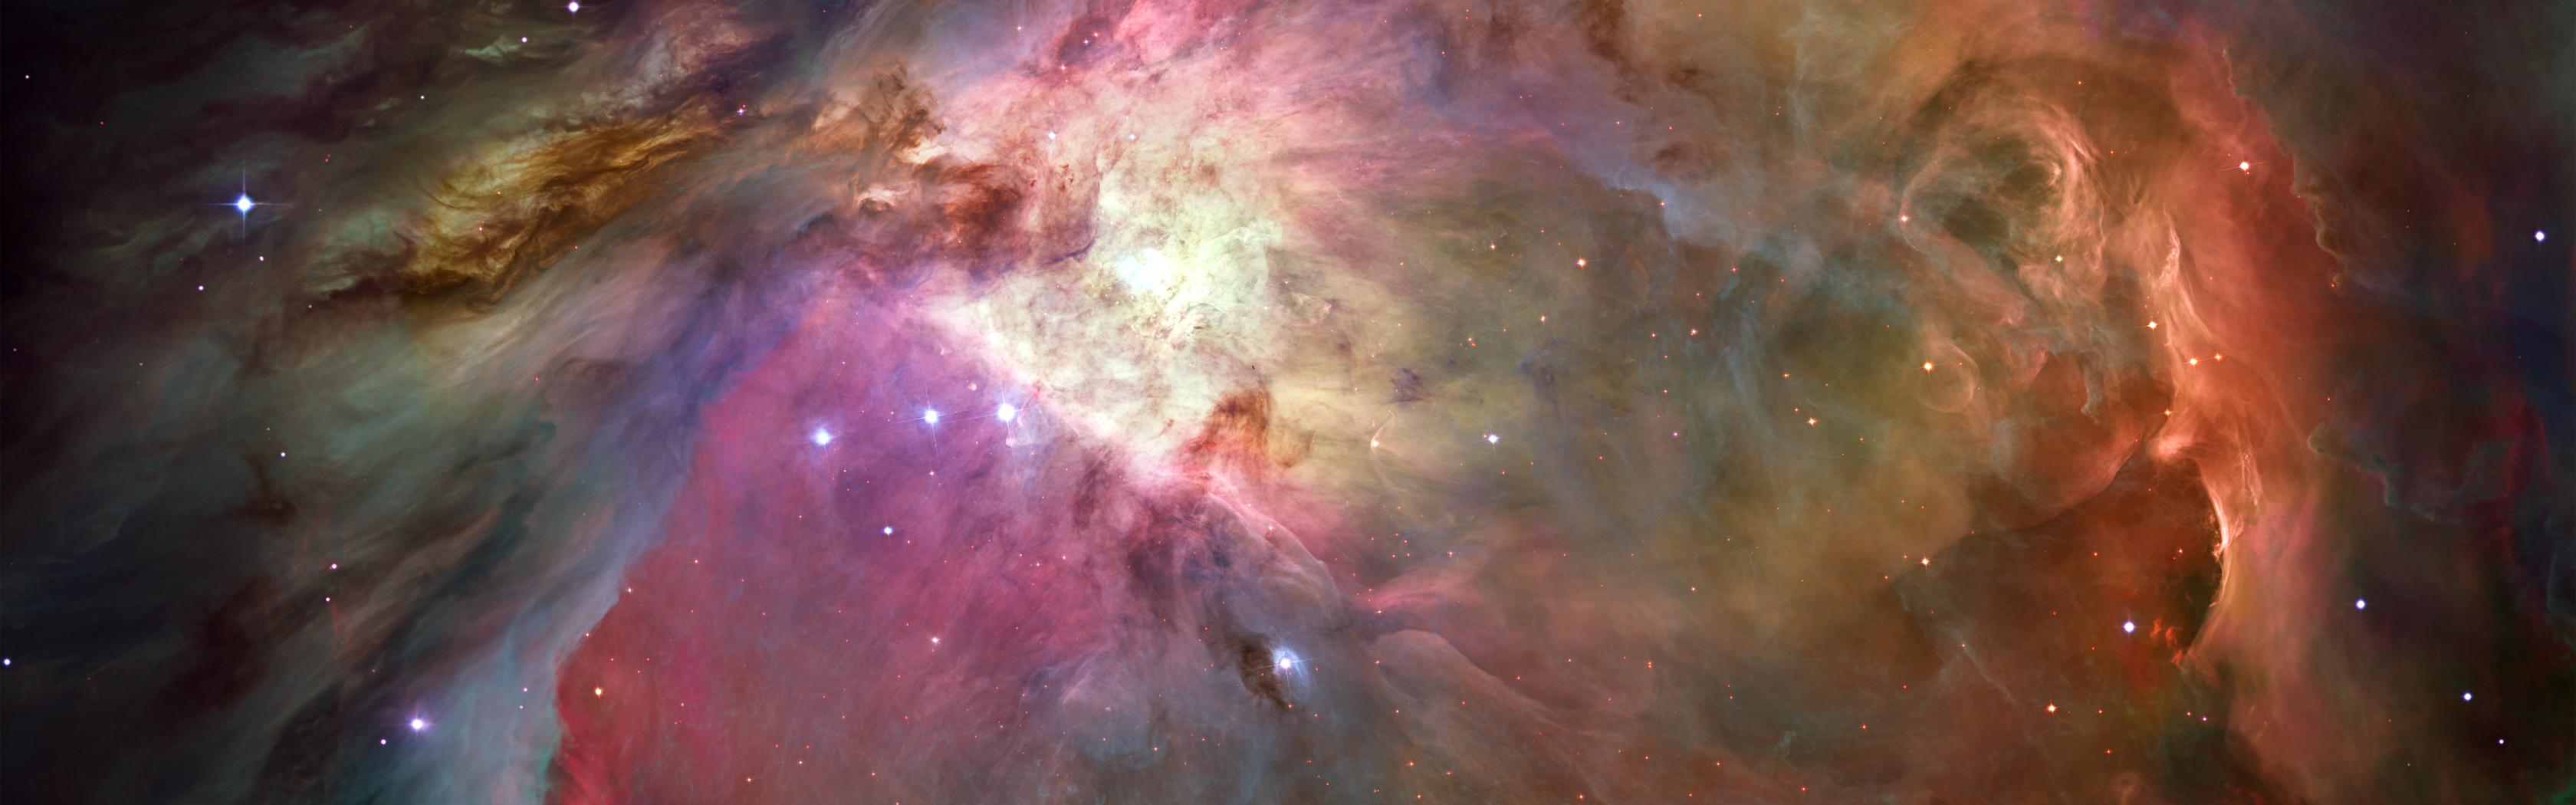 General 3360x1050 space universe galaxy nebula